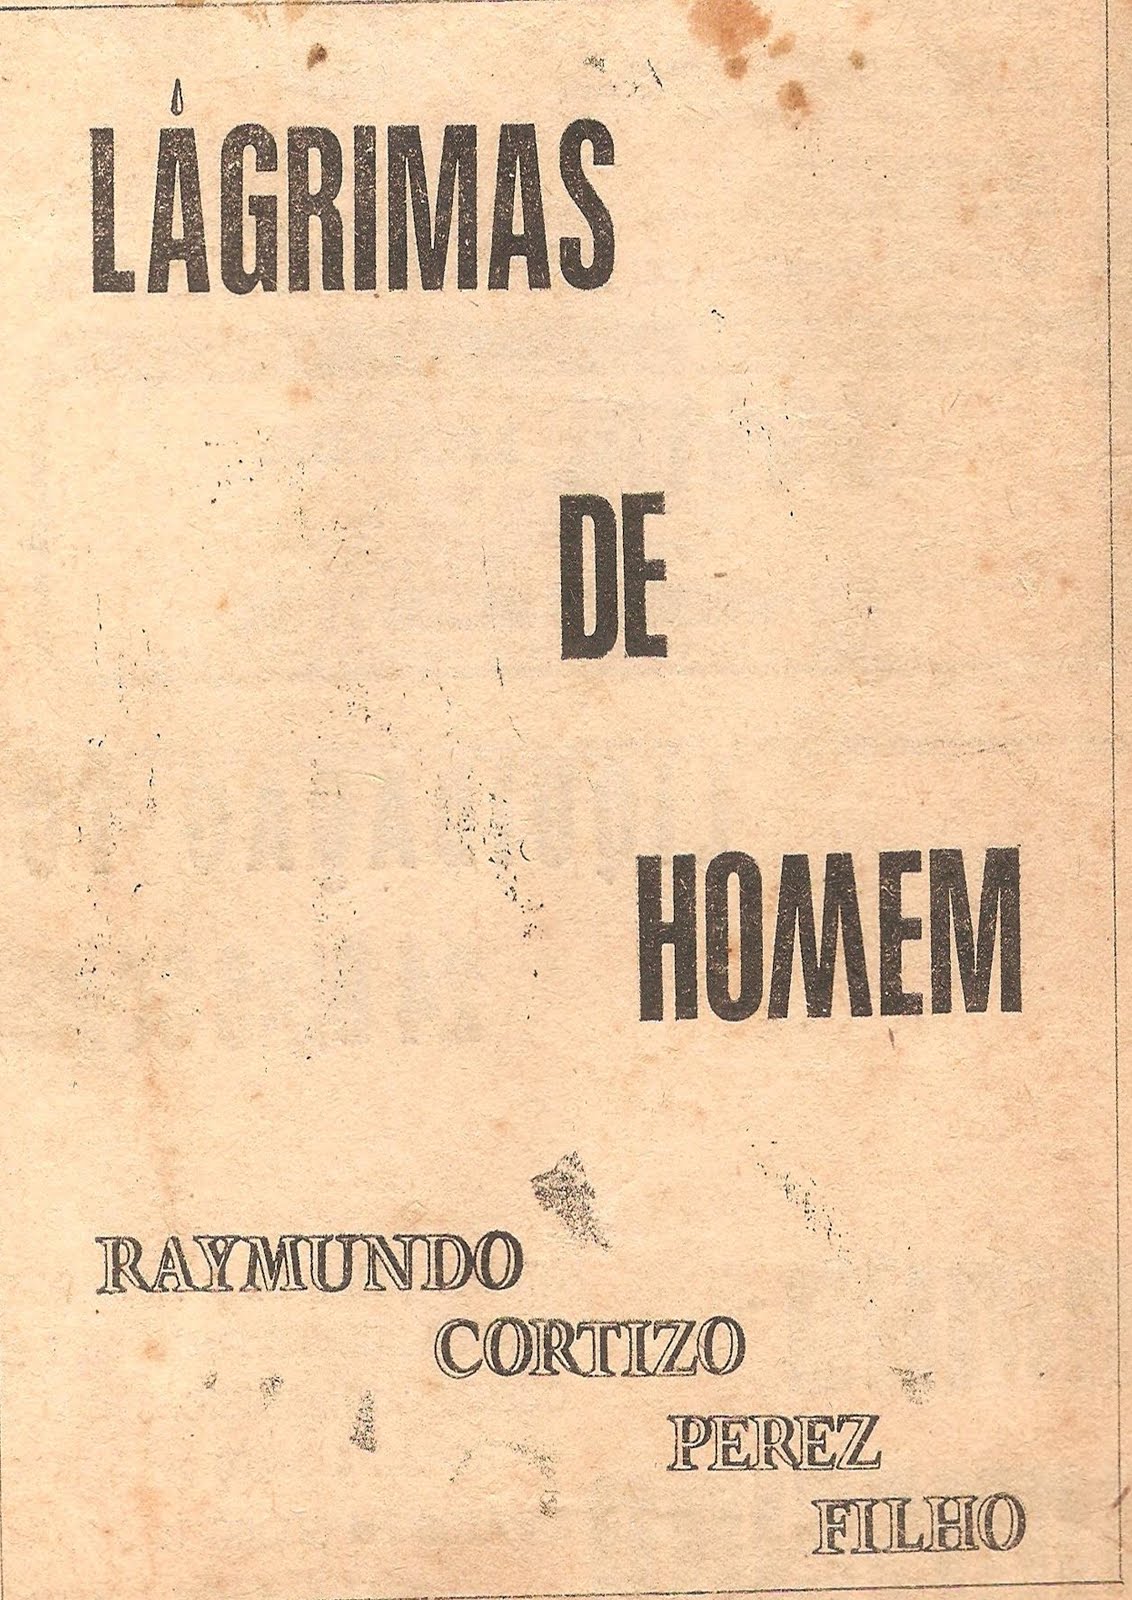 em 1978, o segundo livro do poeta